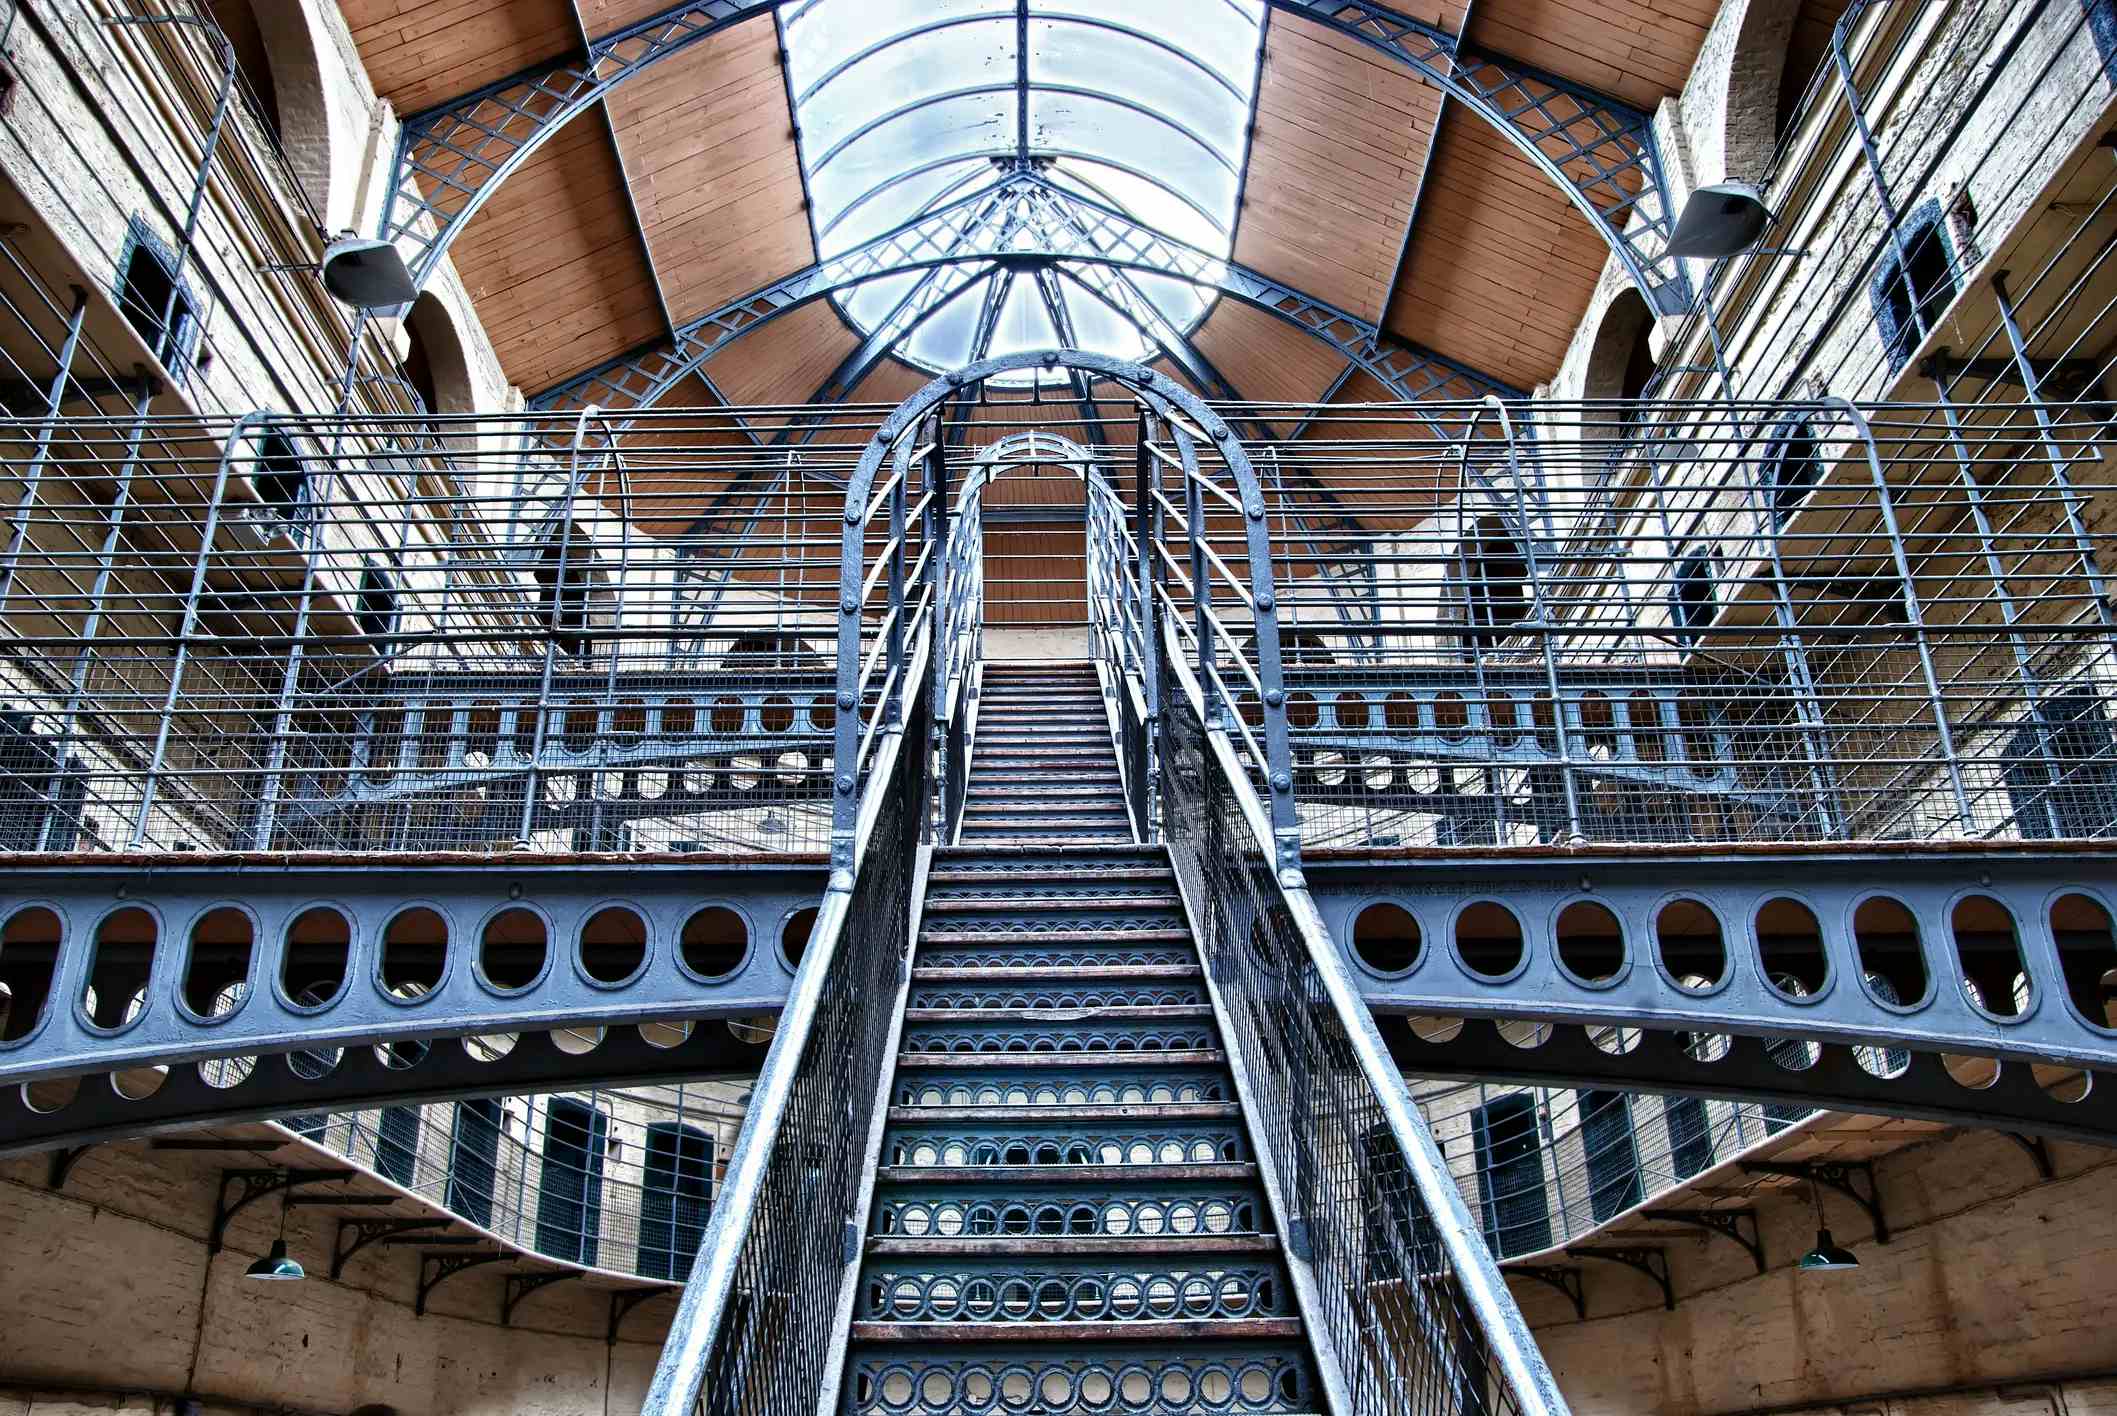 Kilmainham Gaol image